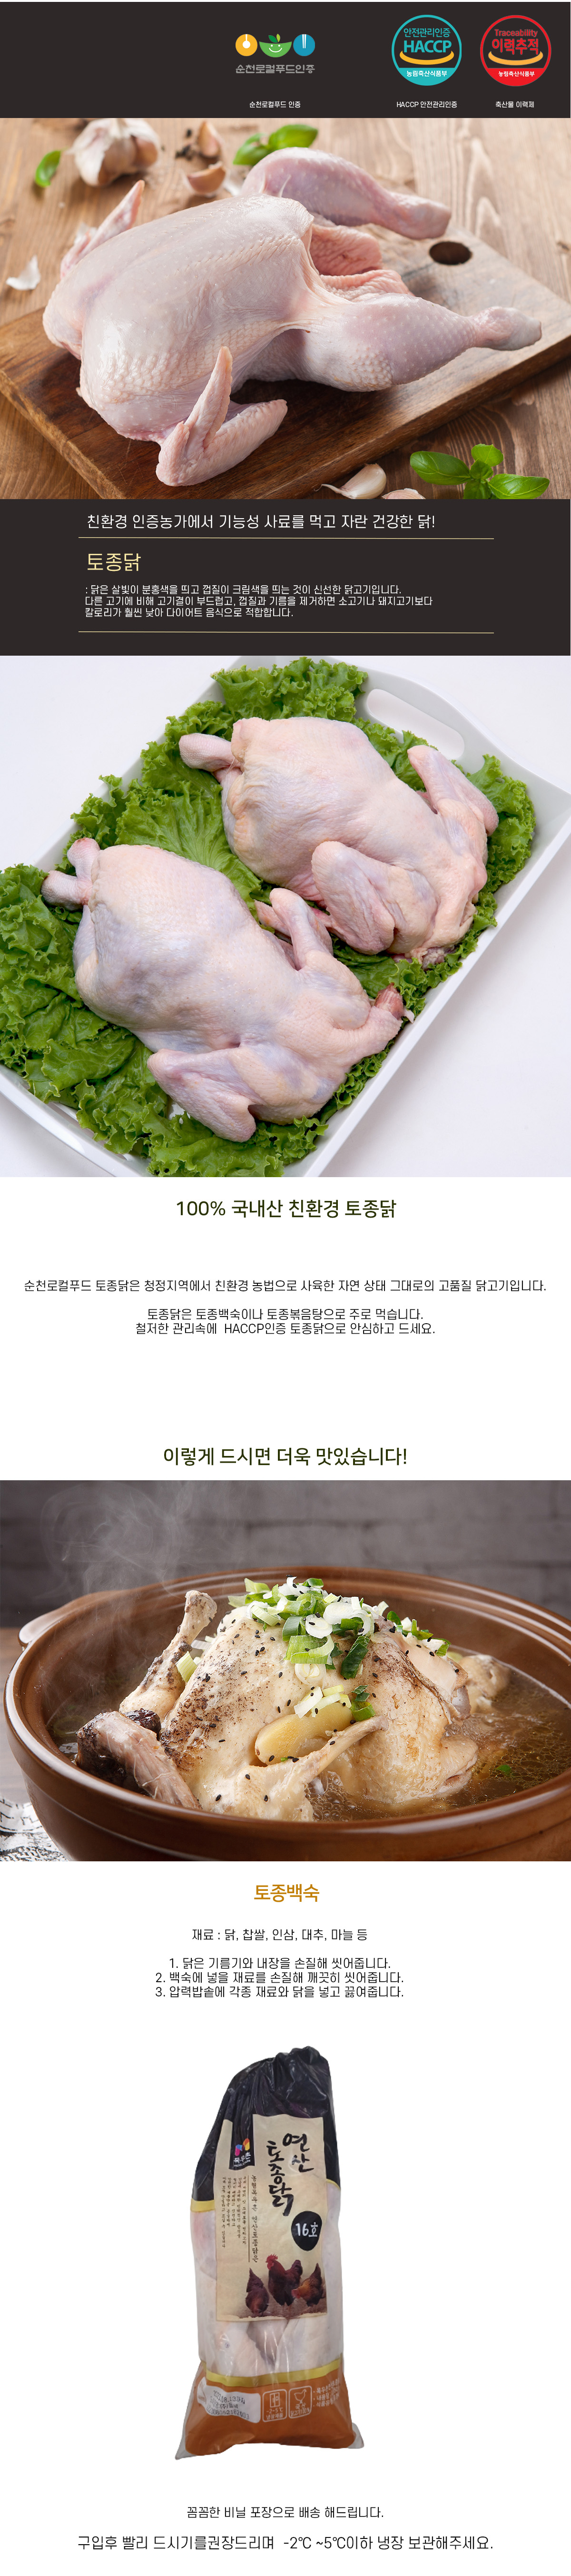 [축산] 토종닭 16호 (1.6kg)-목우촌